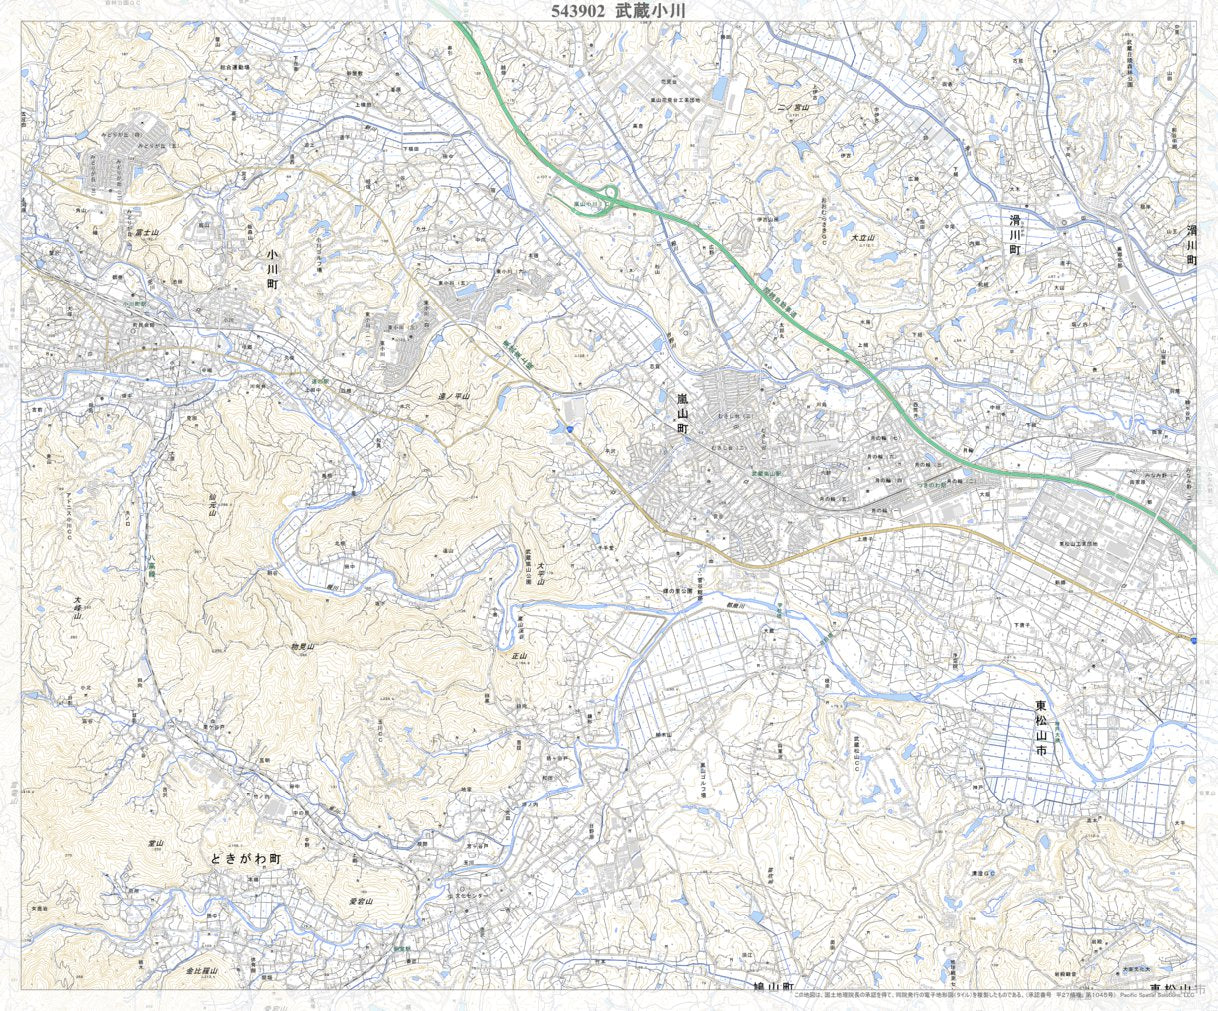 543902 武蔵小川 （むさしおがわ Musashiogawa）, 地形図 Map by 